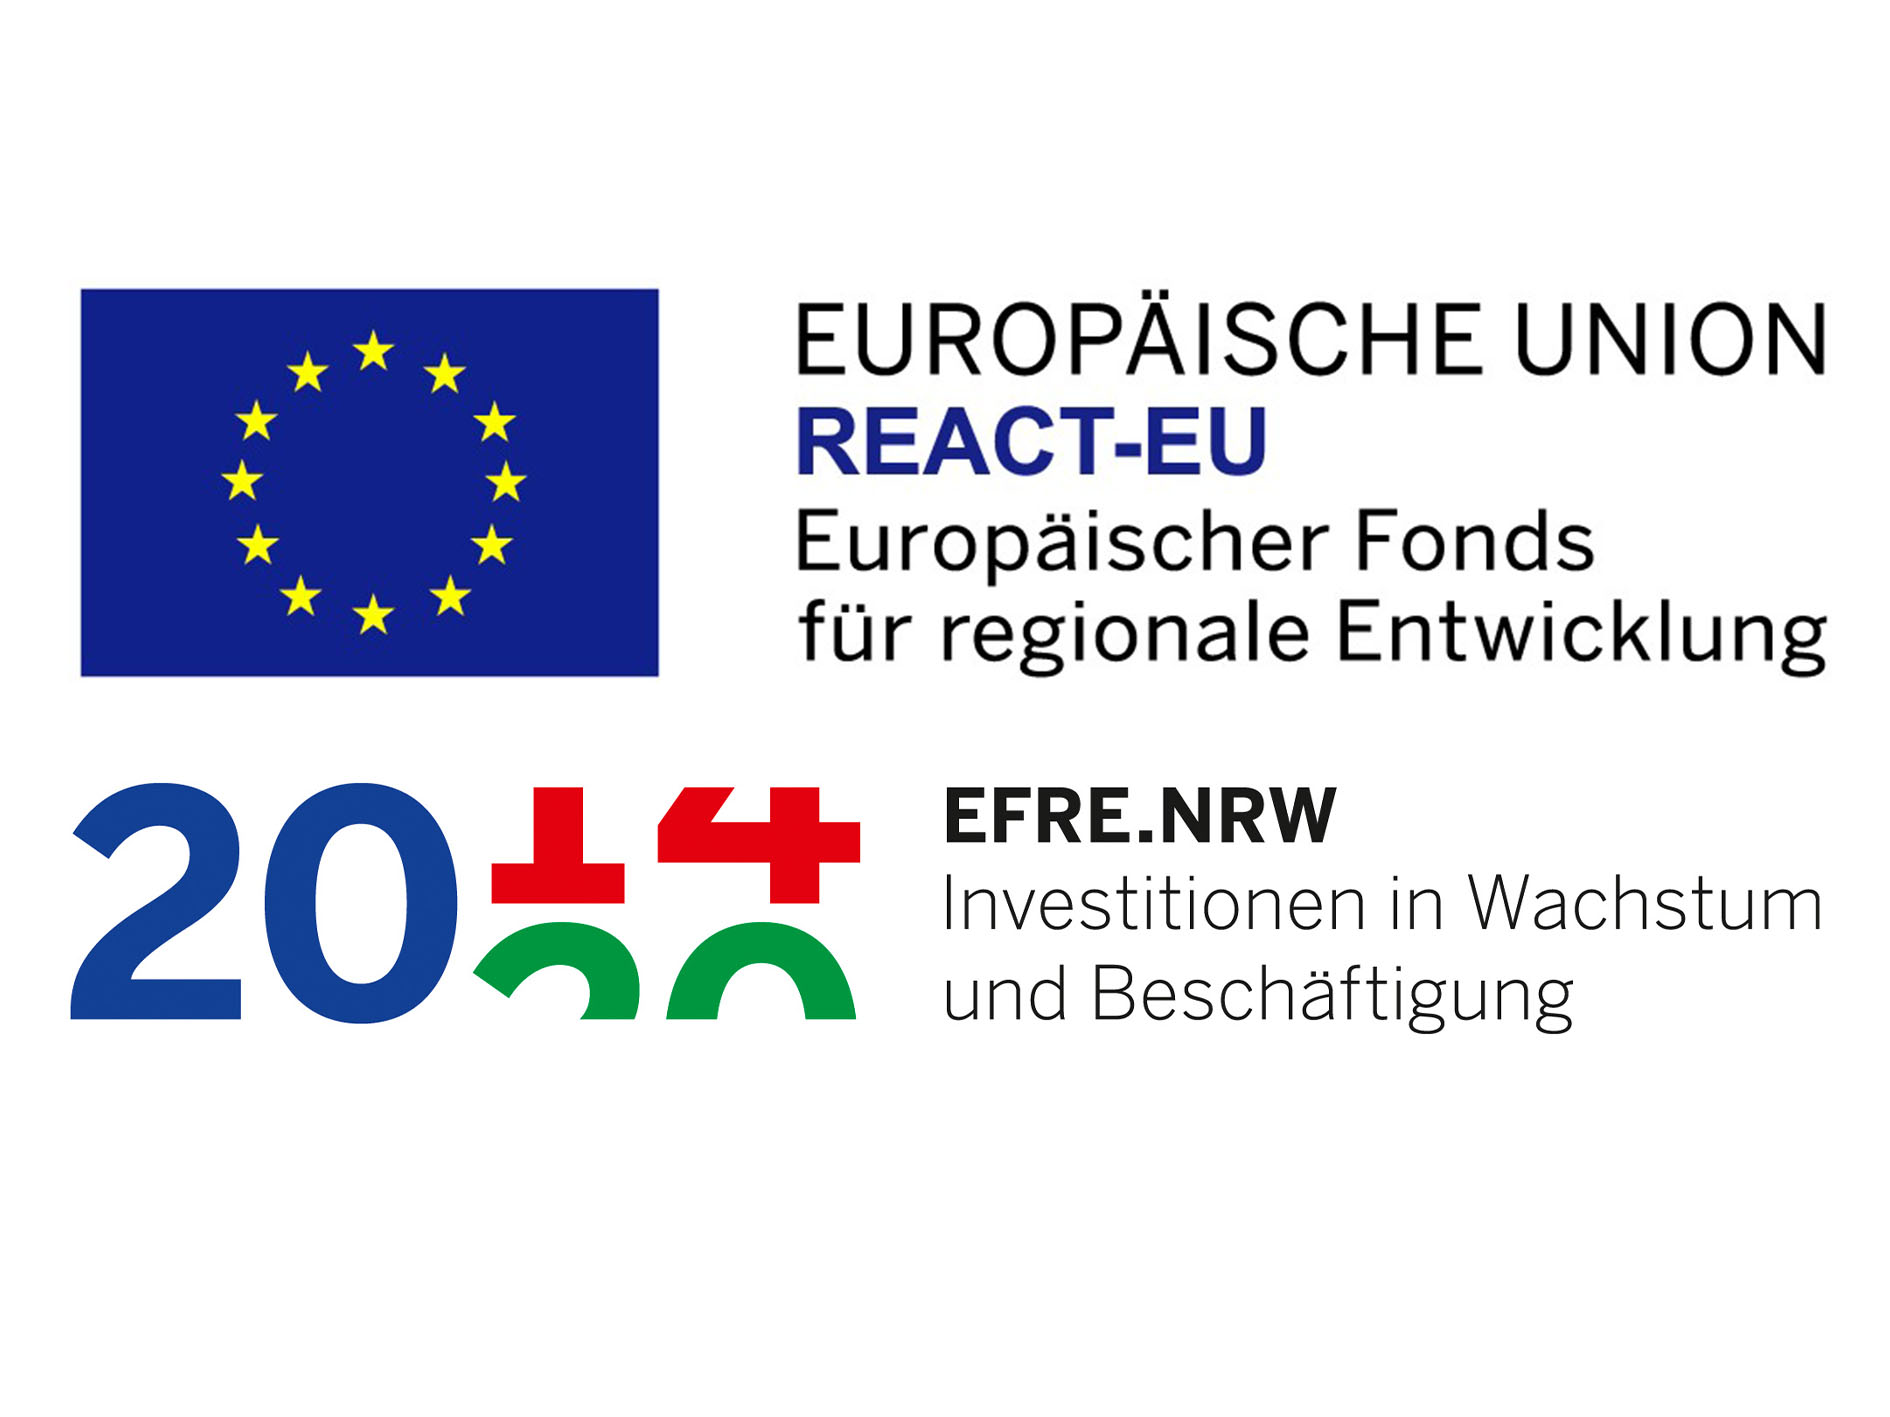 REACT-EU / EFRE.NRW